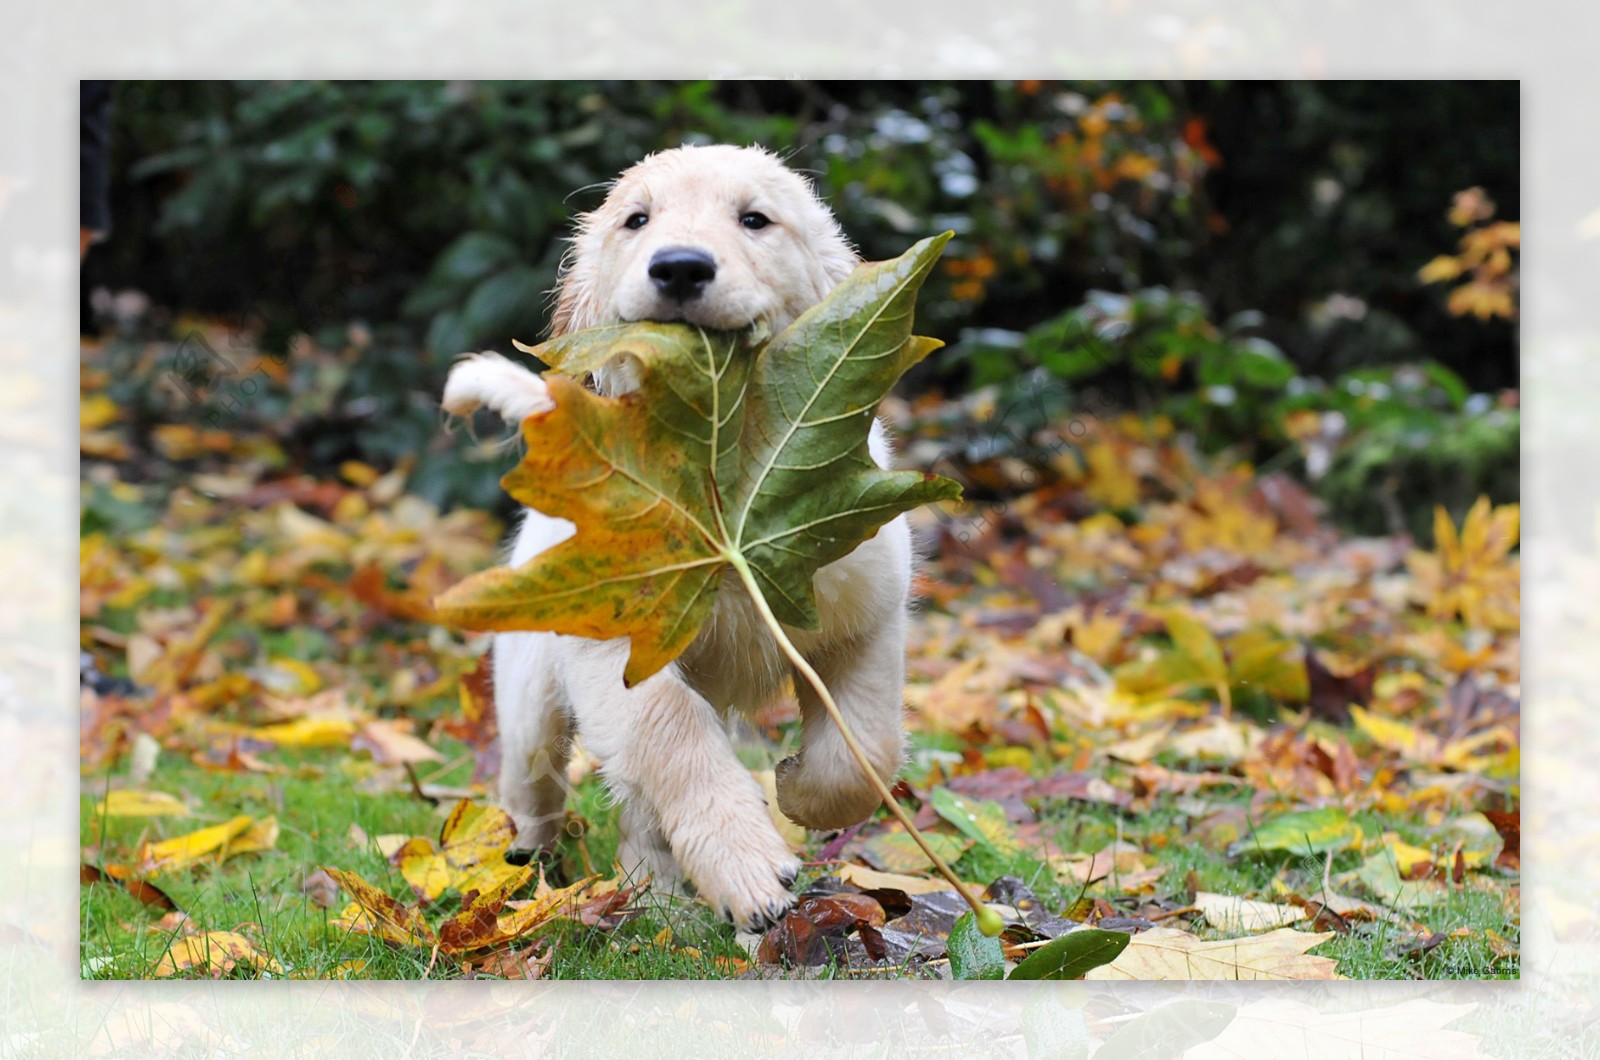 叼着叶子的小狗图片